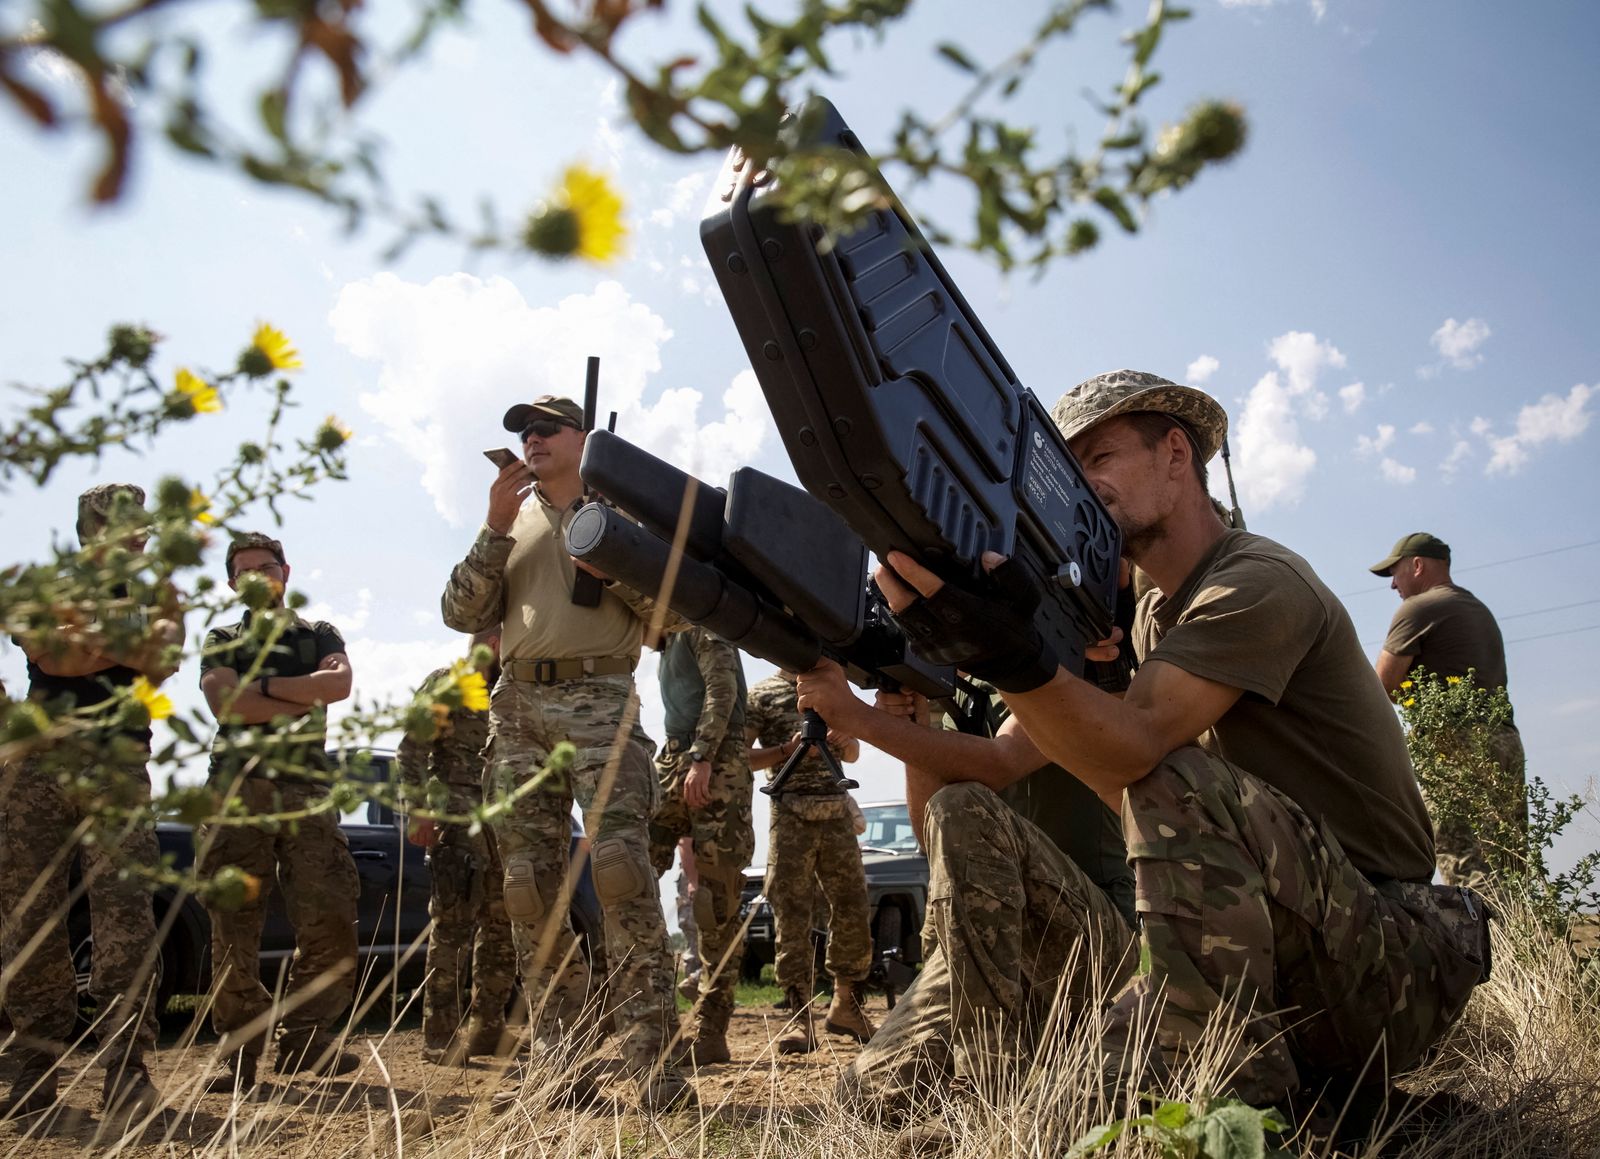 جنود أوكرانيون يحملون سلاحاً مضادة للطائرات المسيّرة خلال تدريب في منطقة ميكولايف- 14 أغسطس 2022 - REUTERS